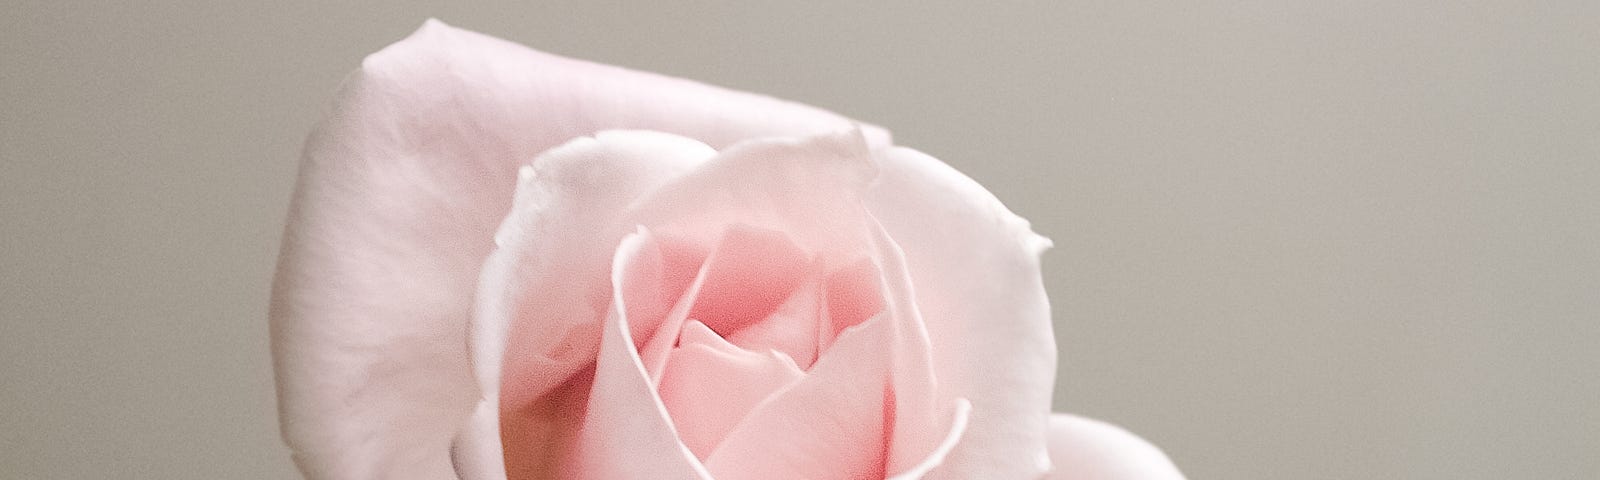 A single long-stemmed pink rose.